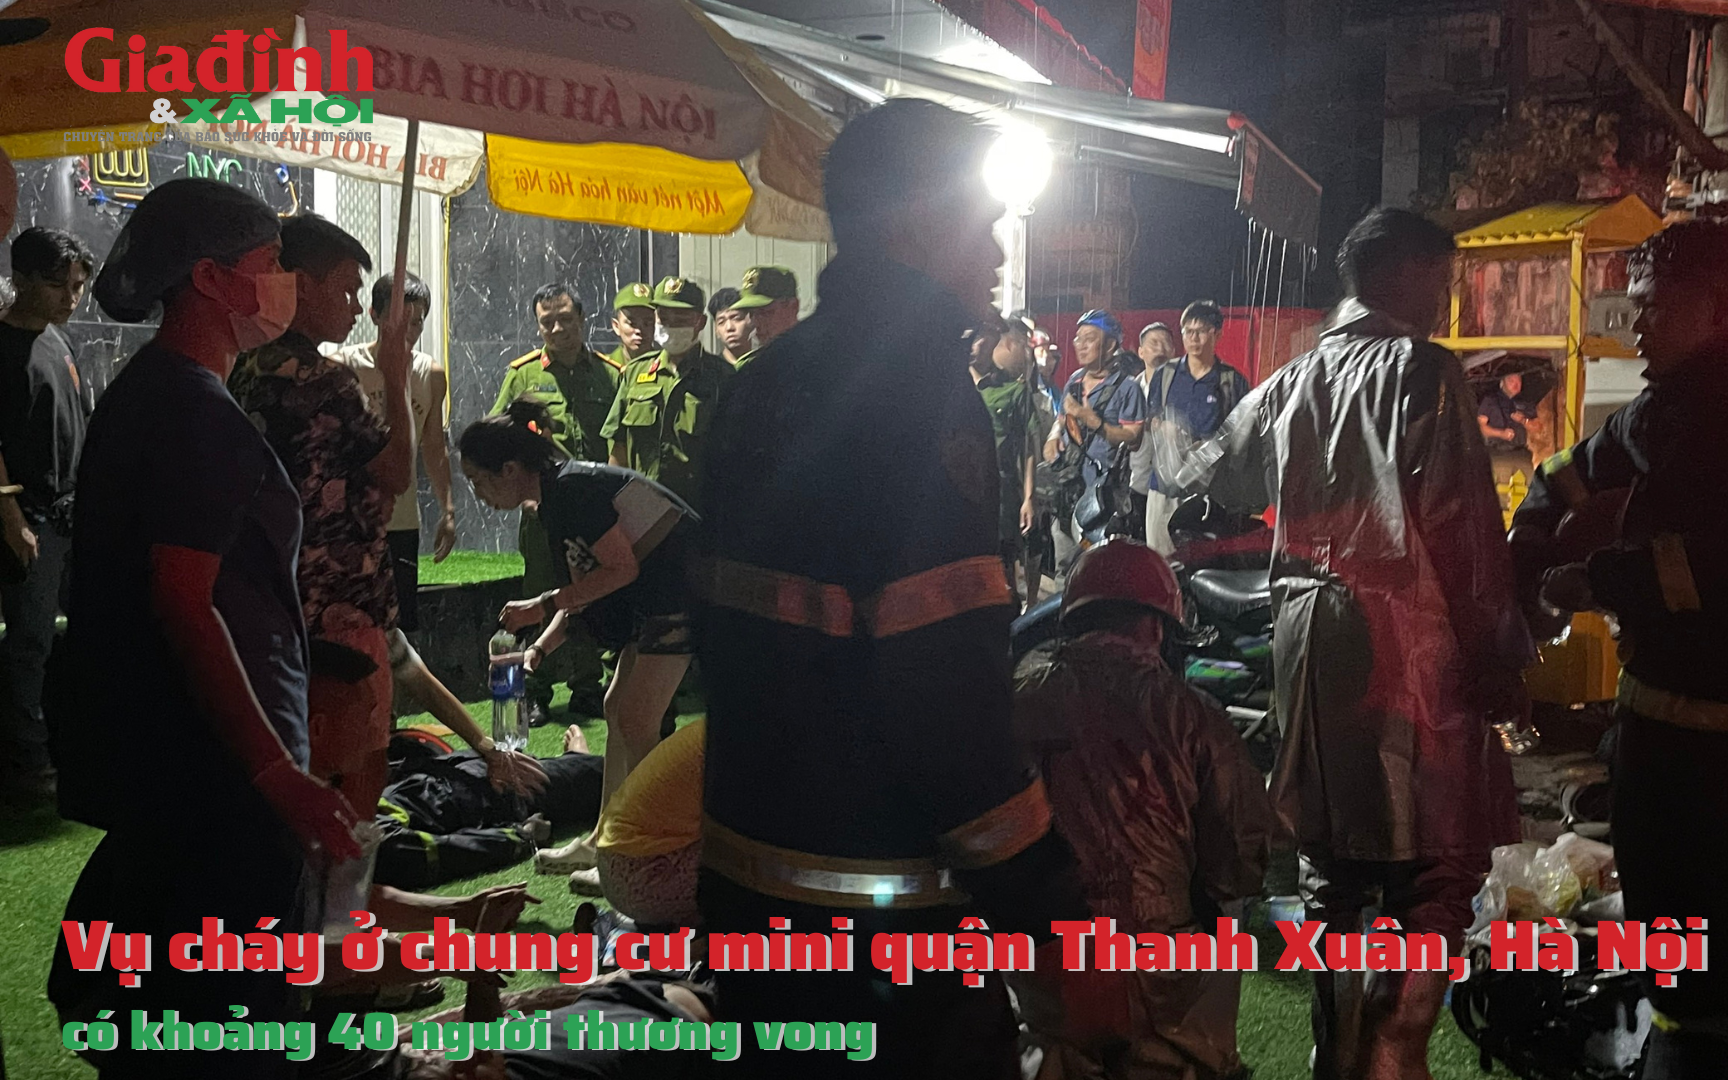 Vụ cháy ở chung cư mini quận Thanh Xuân, Hà Nội: có khoảng 40 người thương vong